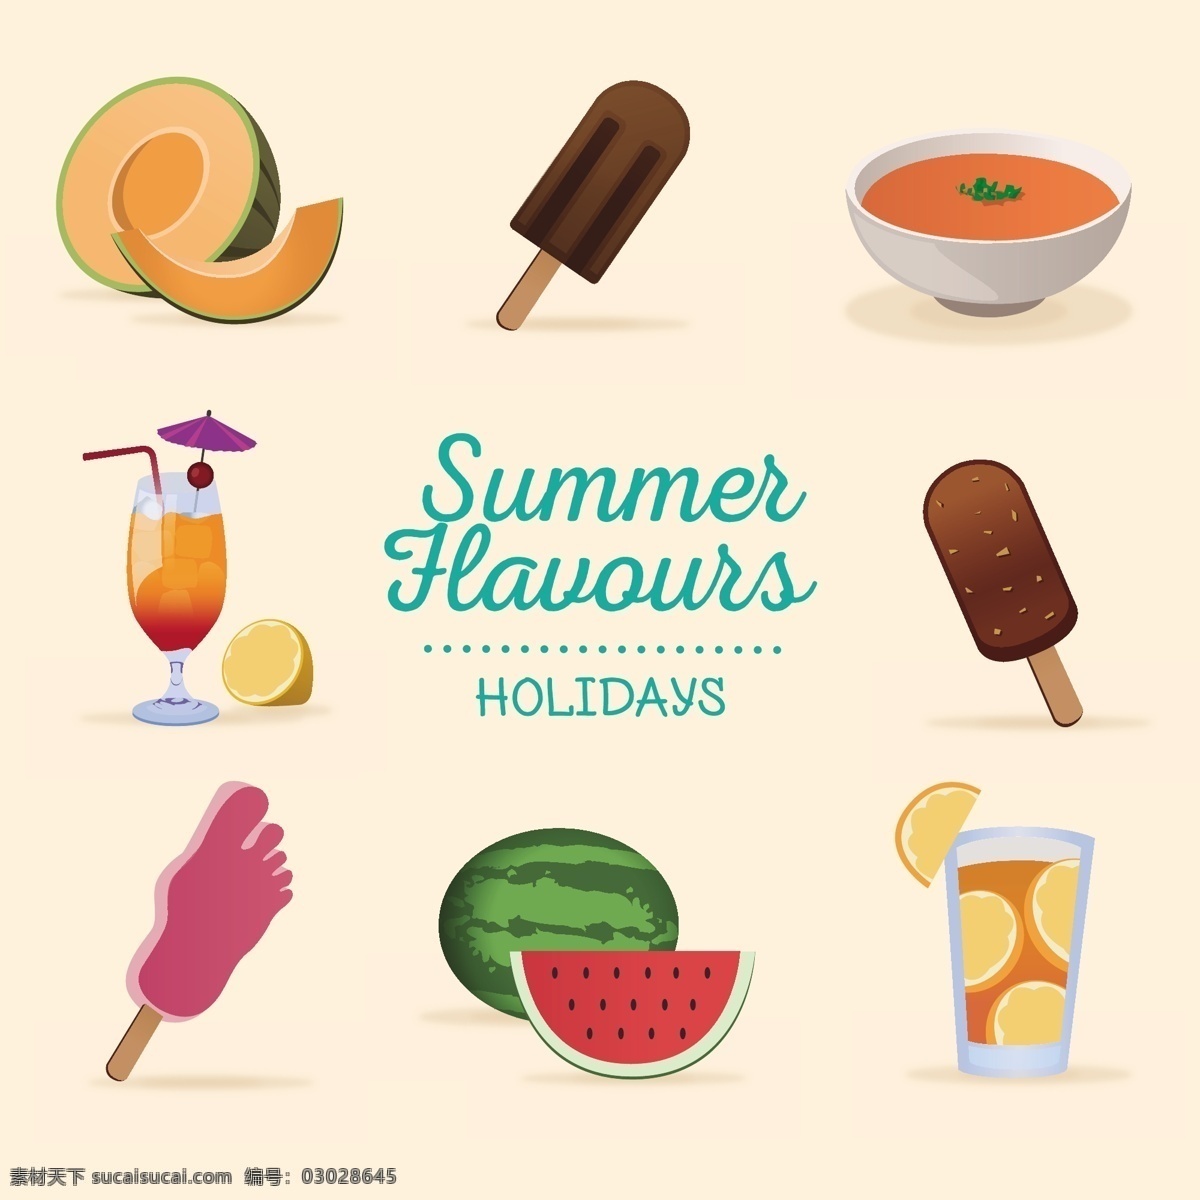 夏天的味道 食品 夏天 冰淇淋 鸡尾酒 冰 假期 西瓜 奶油 假日 甜瓜 美味 柠檬水 风味 白色